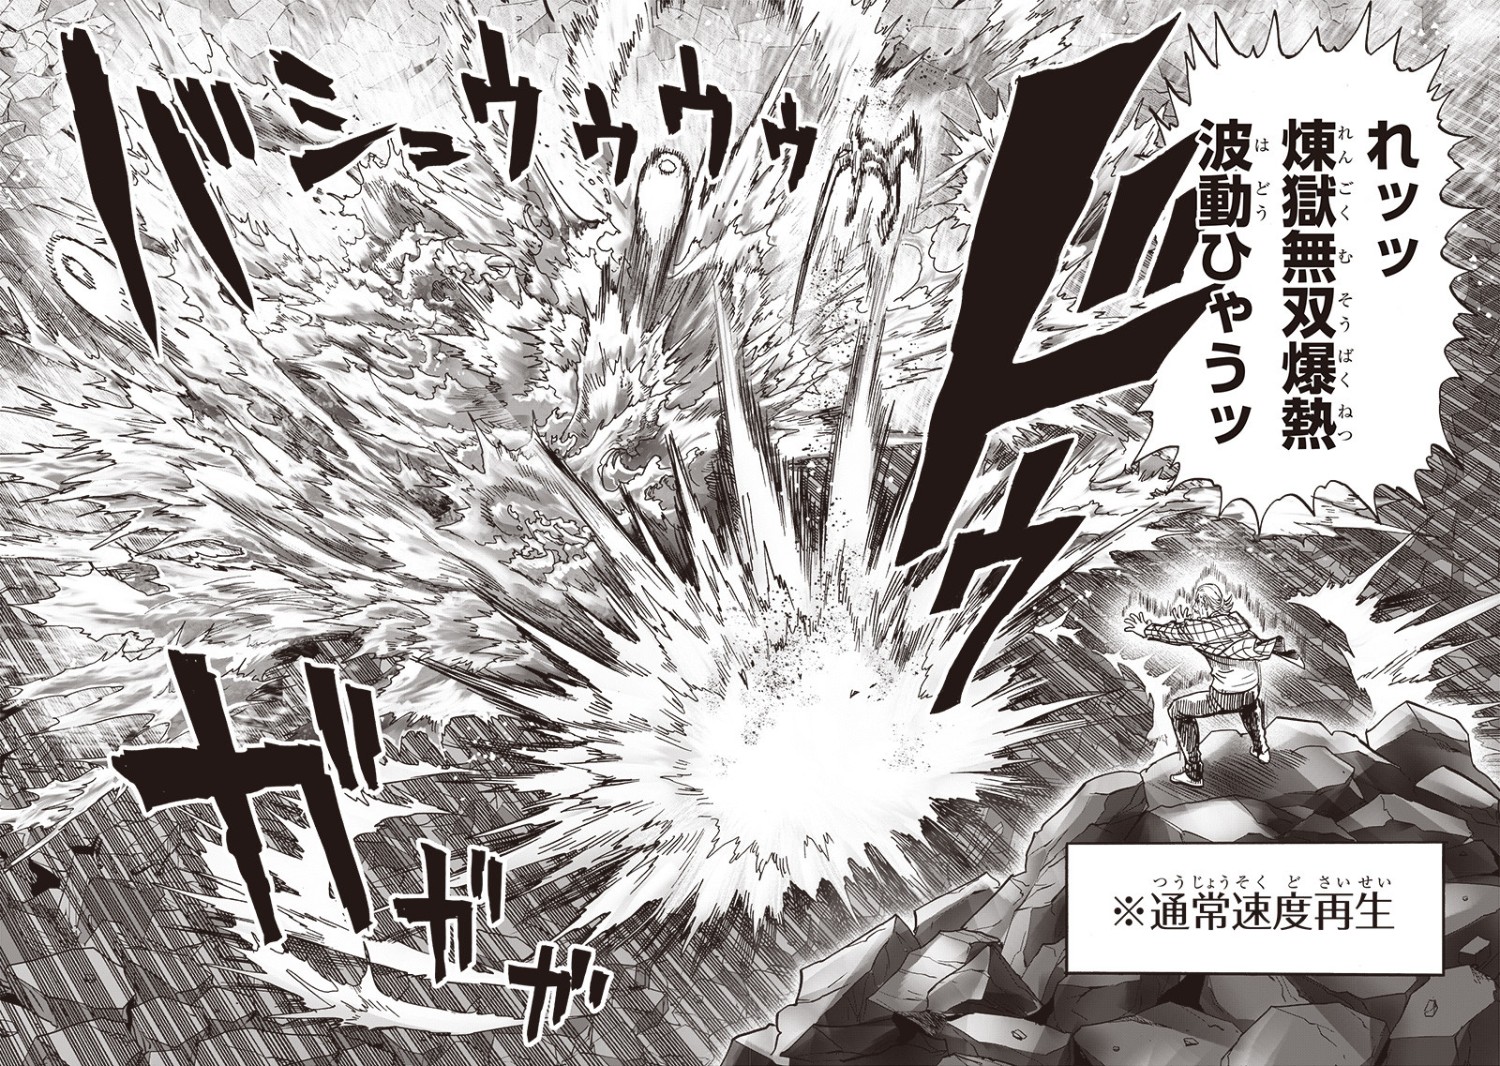 Impressões semanais: One Punch Man e Rakudai Kishi #04 (+ Extras